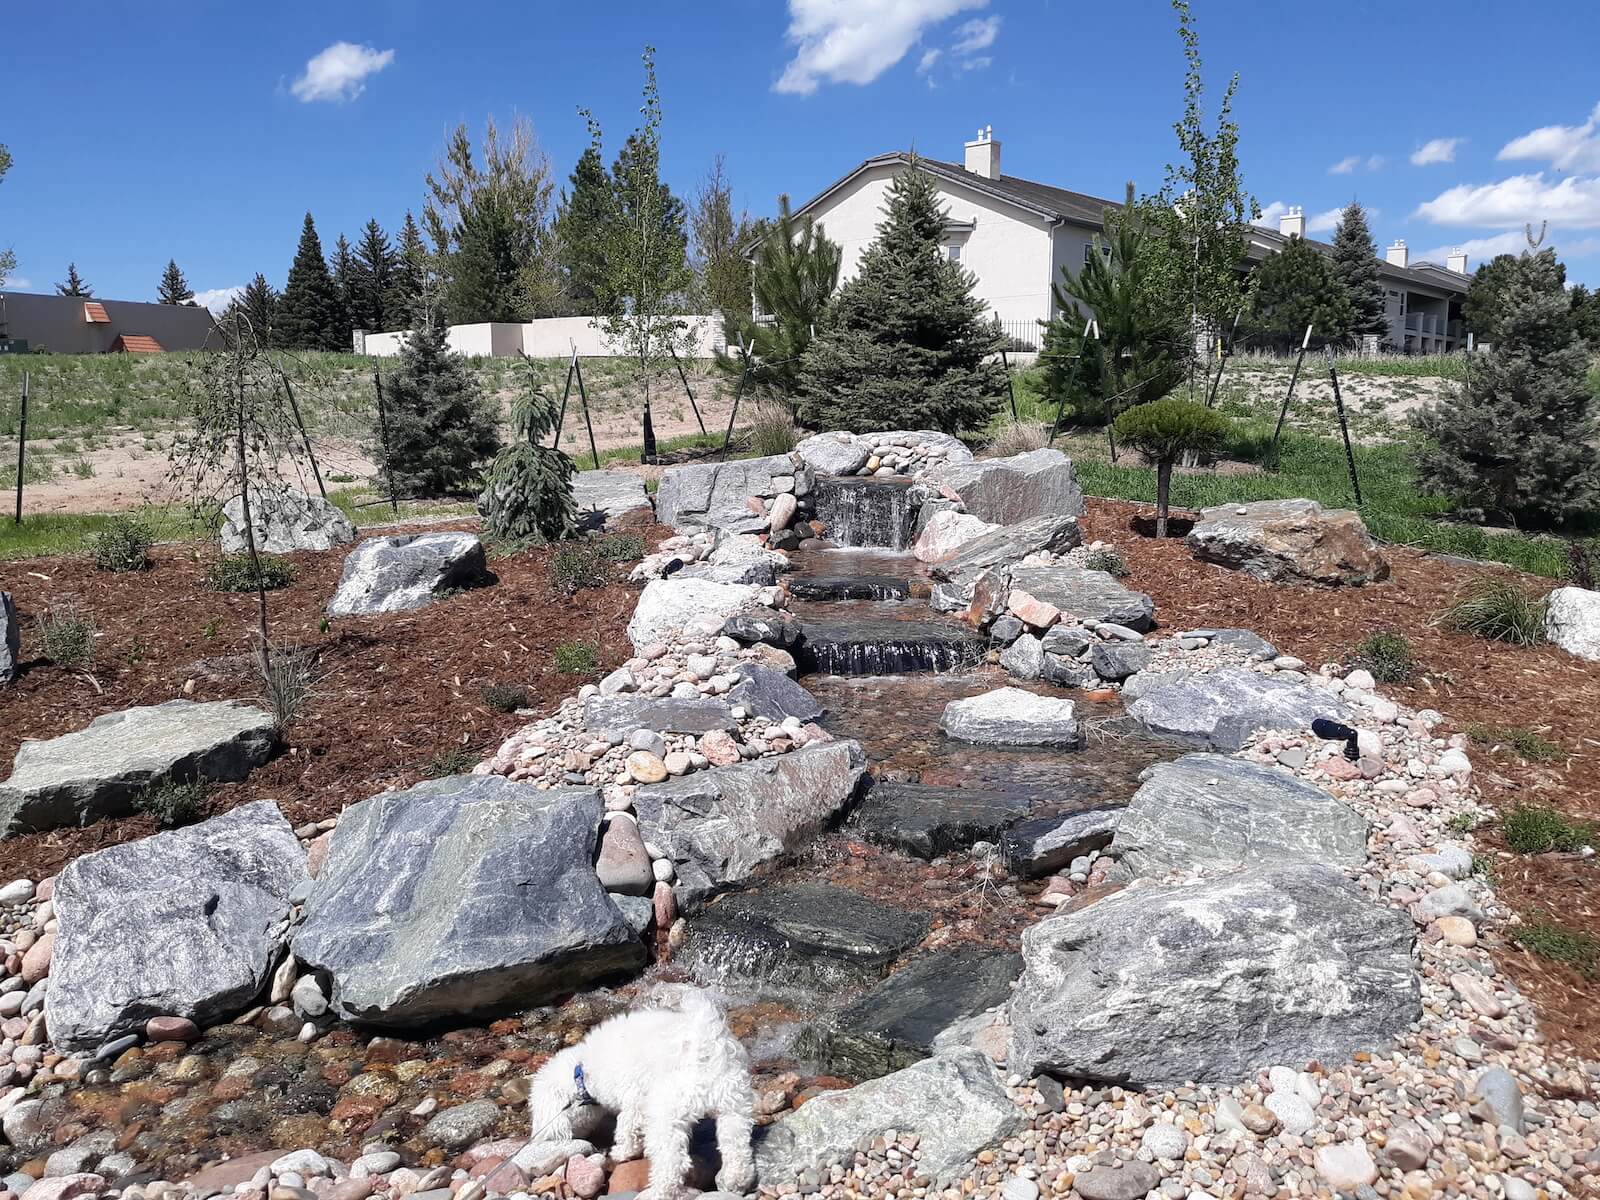 Colorado Springs, CO Landscape Pricing